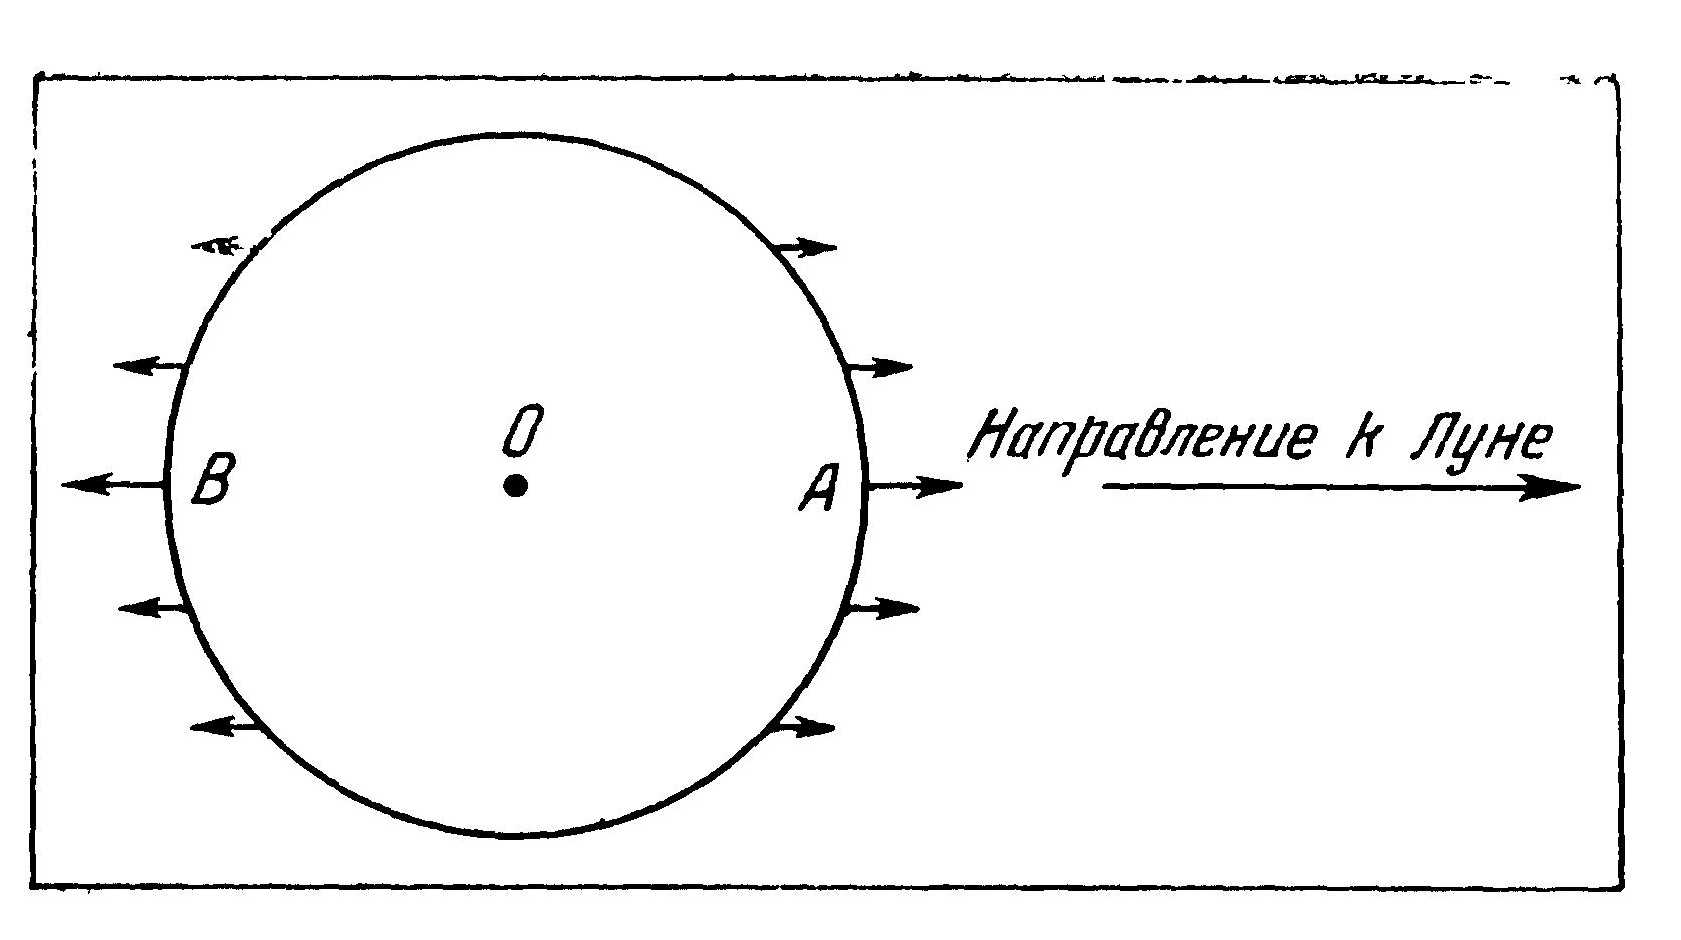 Гравитационное поле Луны в системе отсчета, связанной с Землей